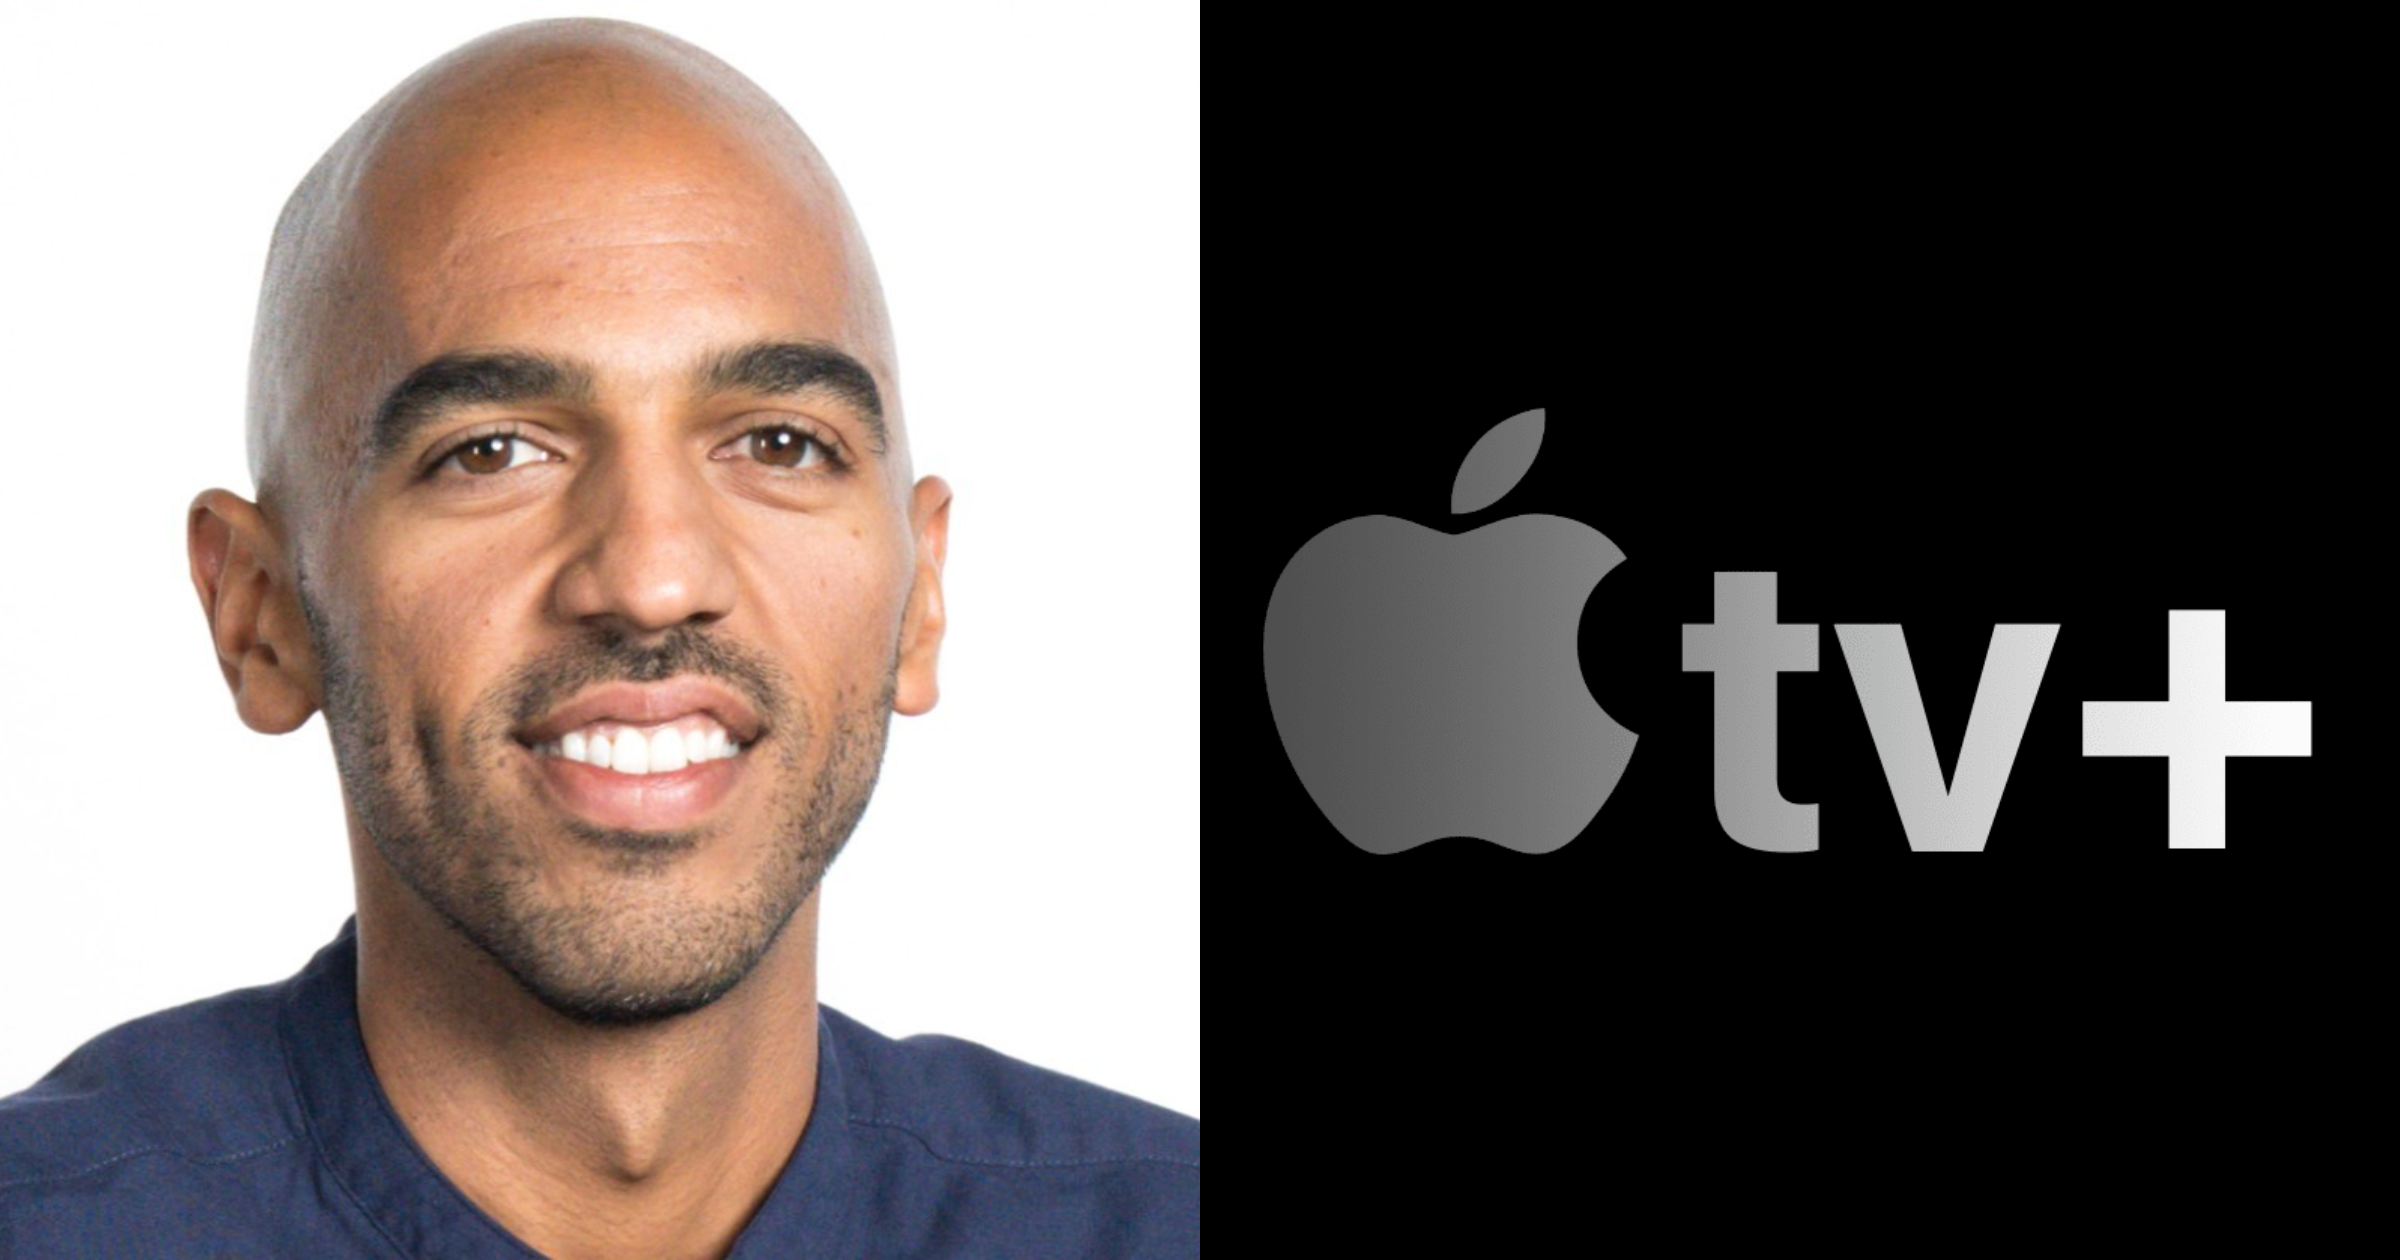 Executive Zennen Clifton has joined Apple TV+